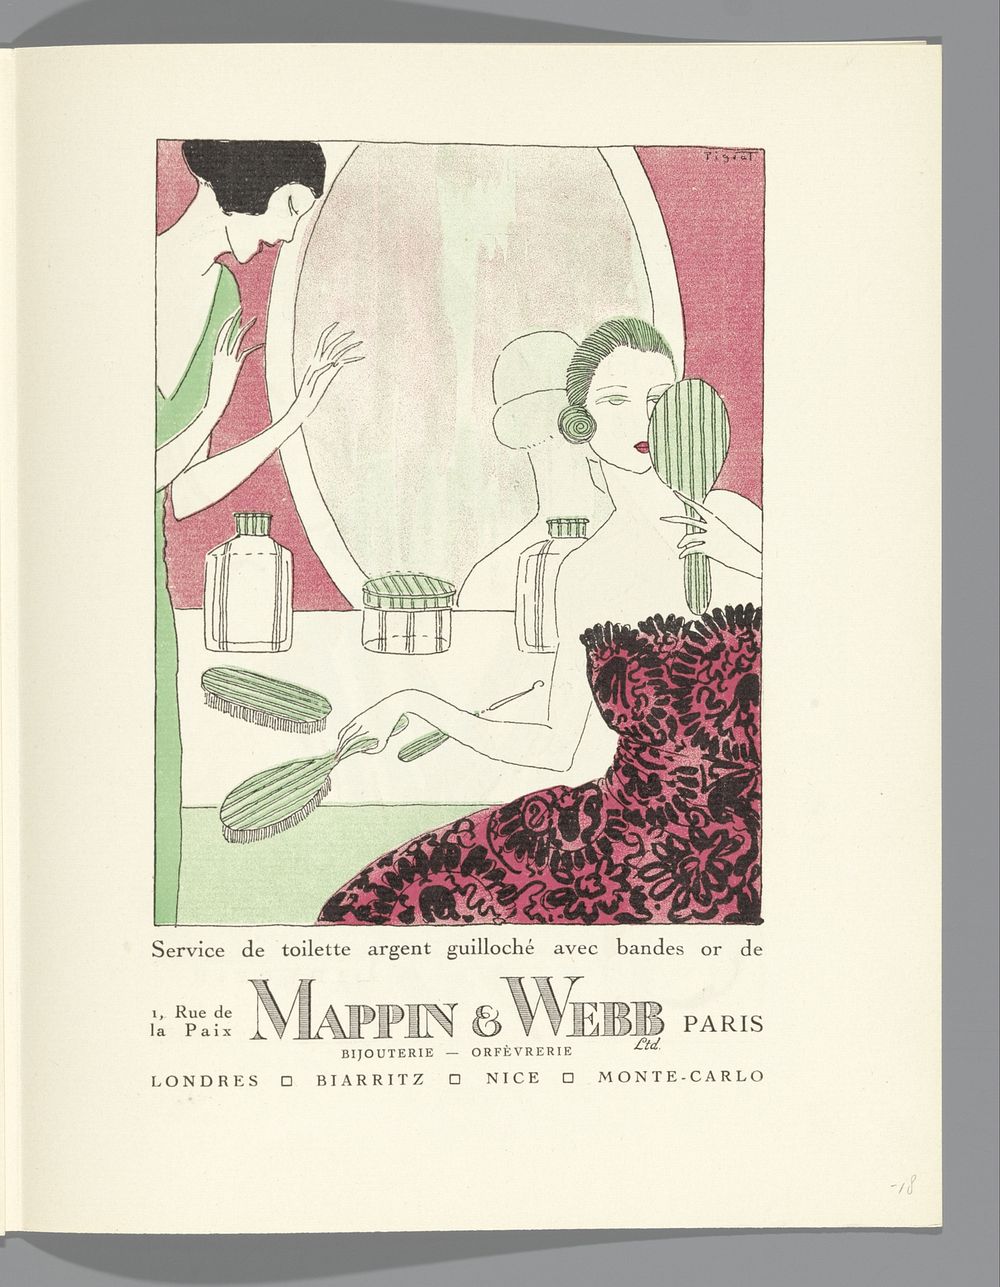 Gazette du Bon Ton, 1920 - No. 8, p. LXVII: advertentie Mappin & Webb, bijouterie - orfévrerie (1920) by Lucien Vogel, The…